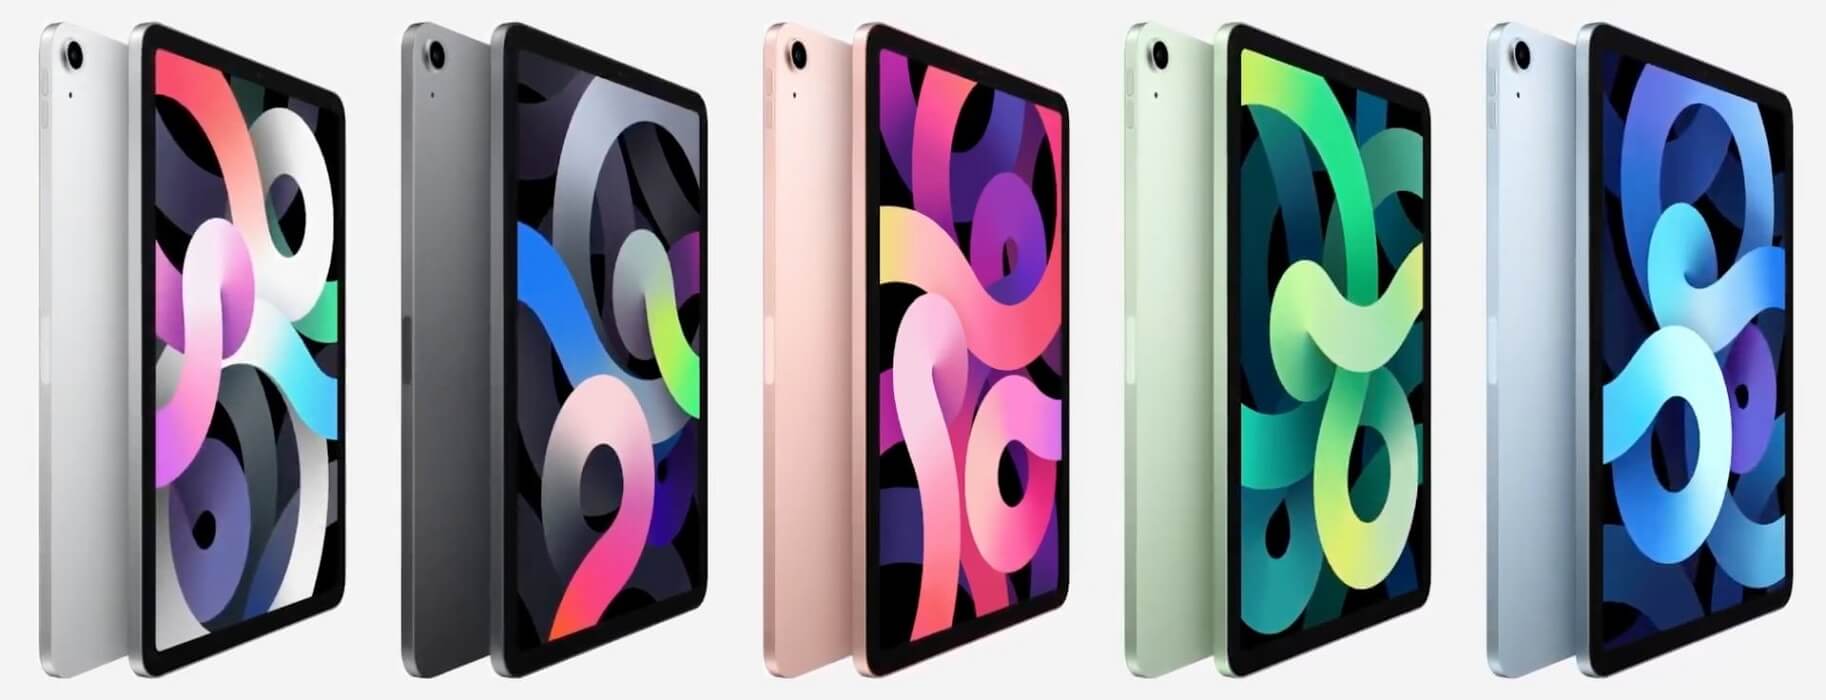 Apple iPad Air 4th Gen colors